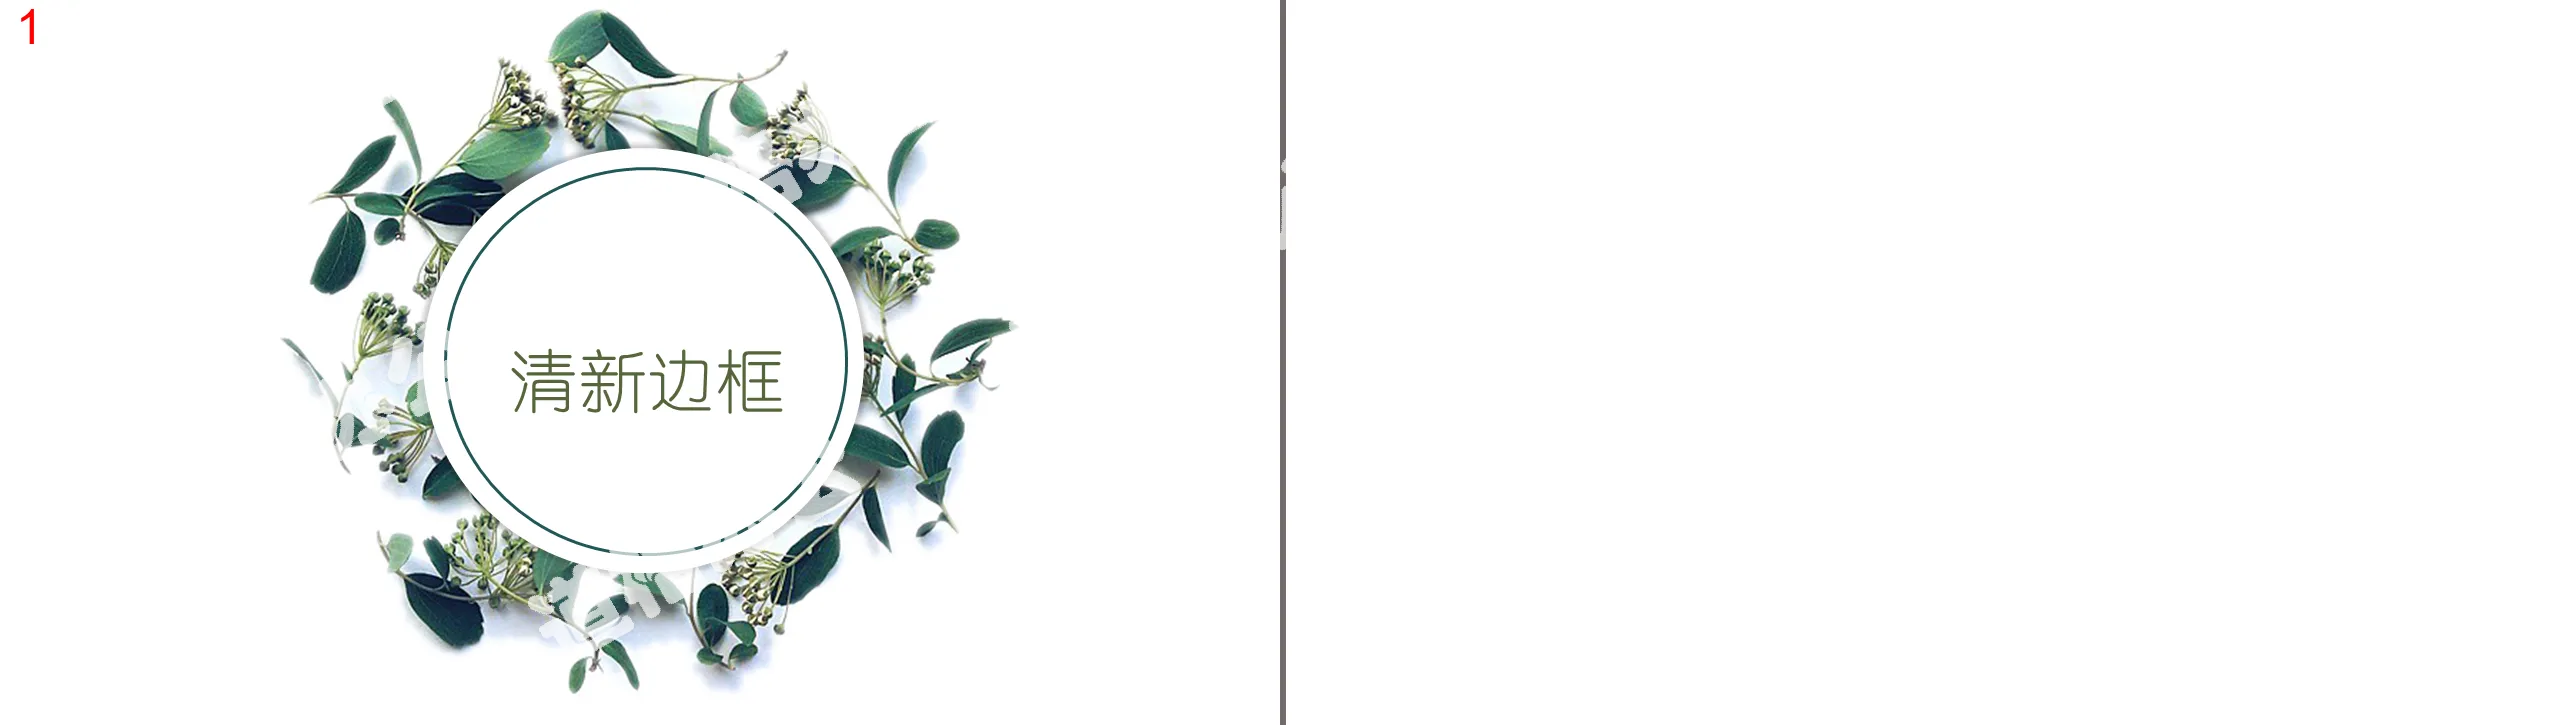 小清新植物环绕的PPT边框背景图片